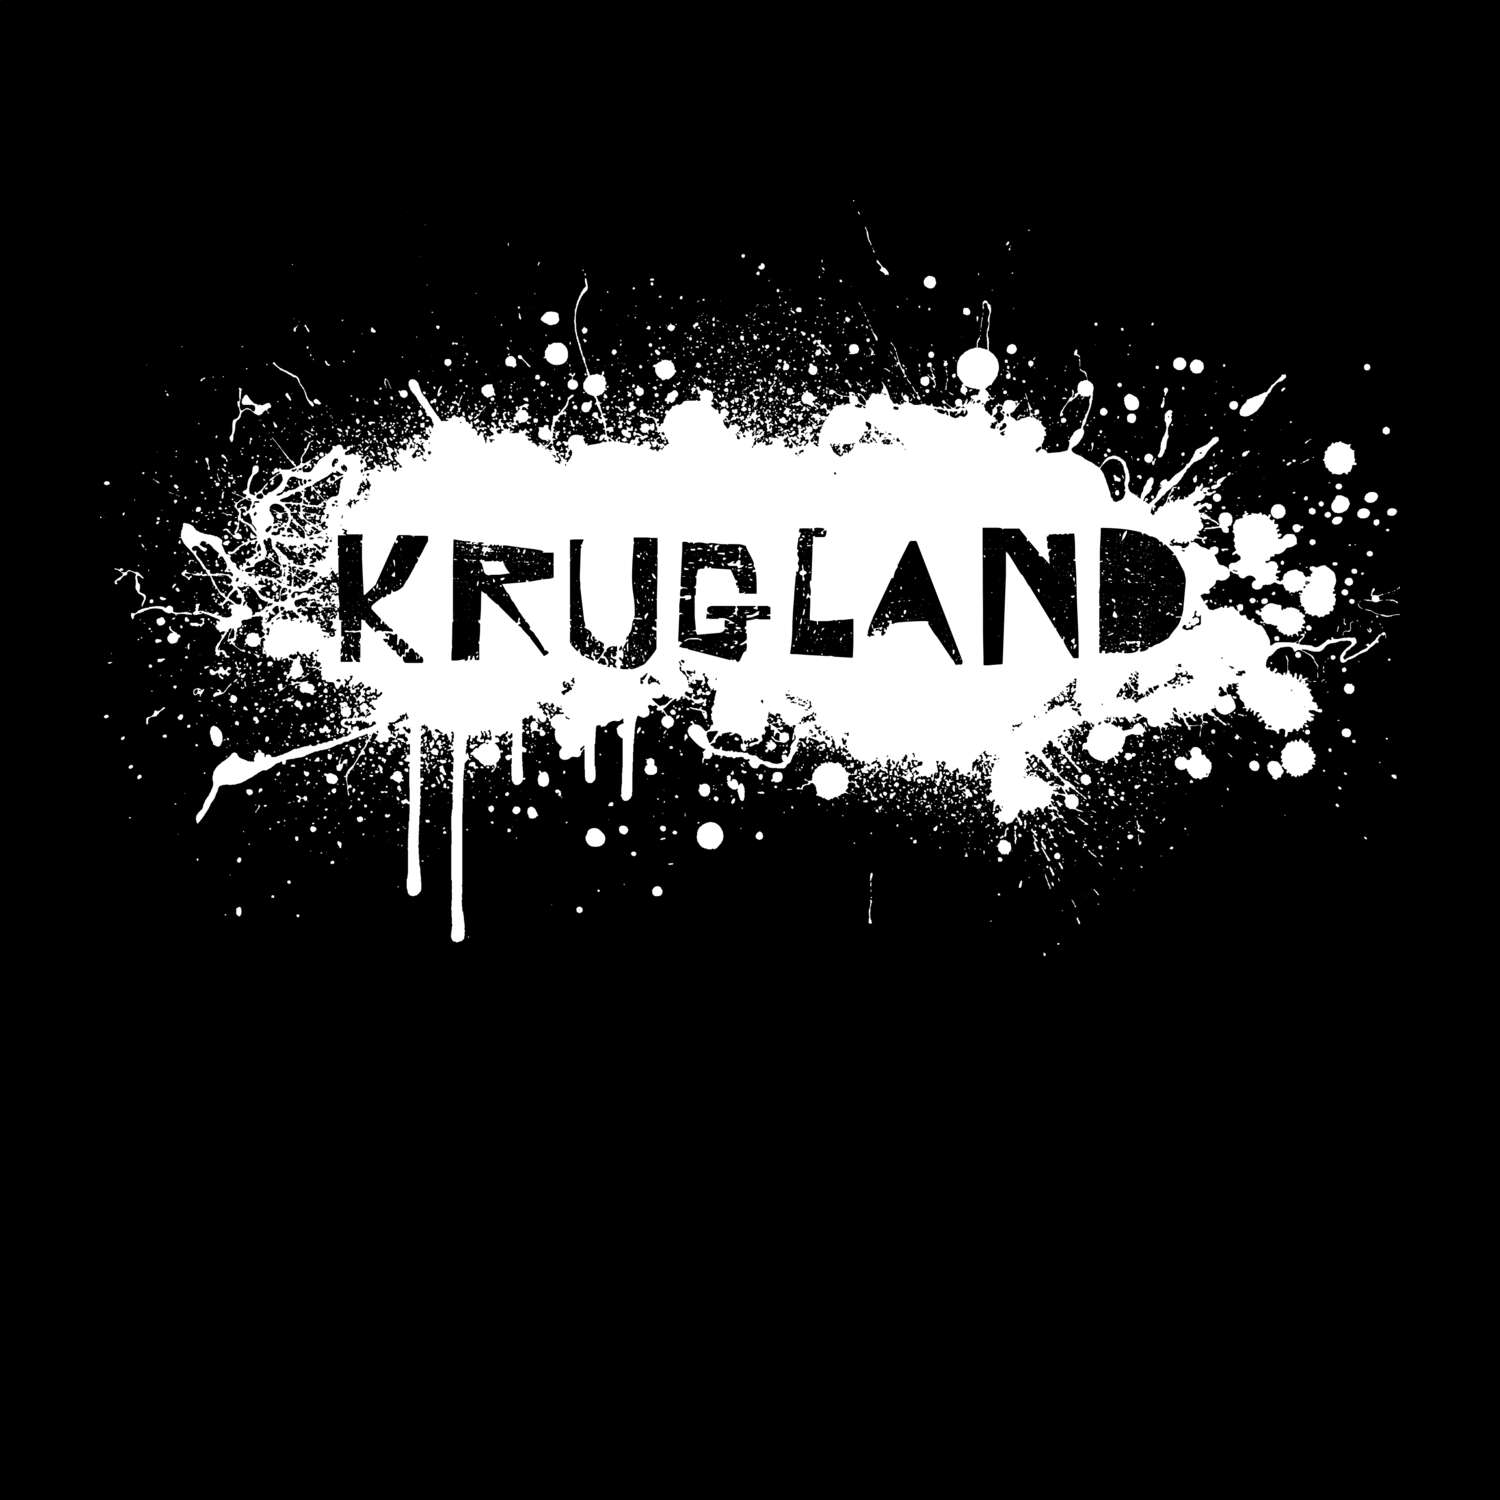 Krugland T-Shirt »Paint Splash Punk«